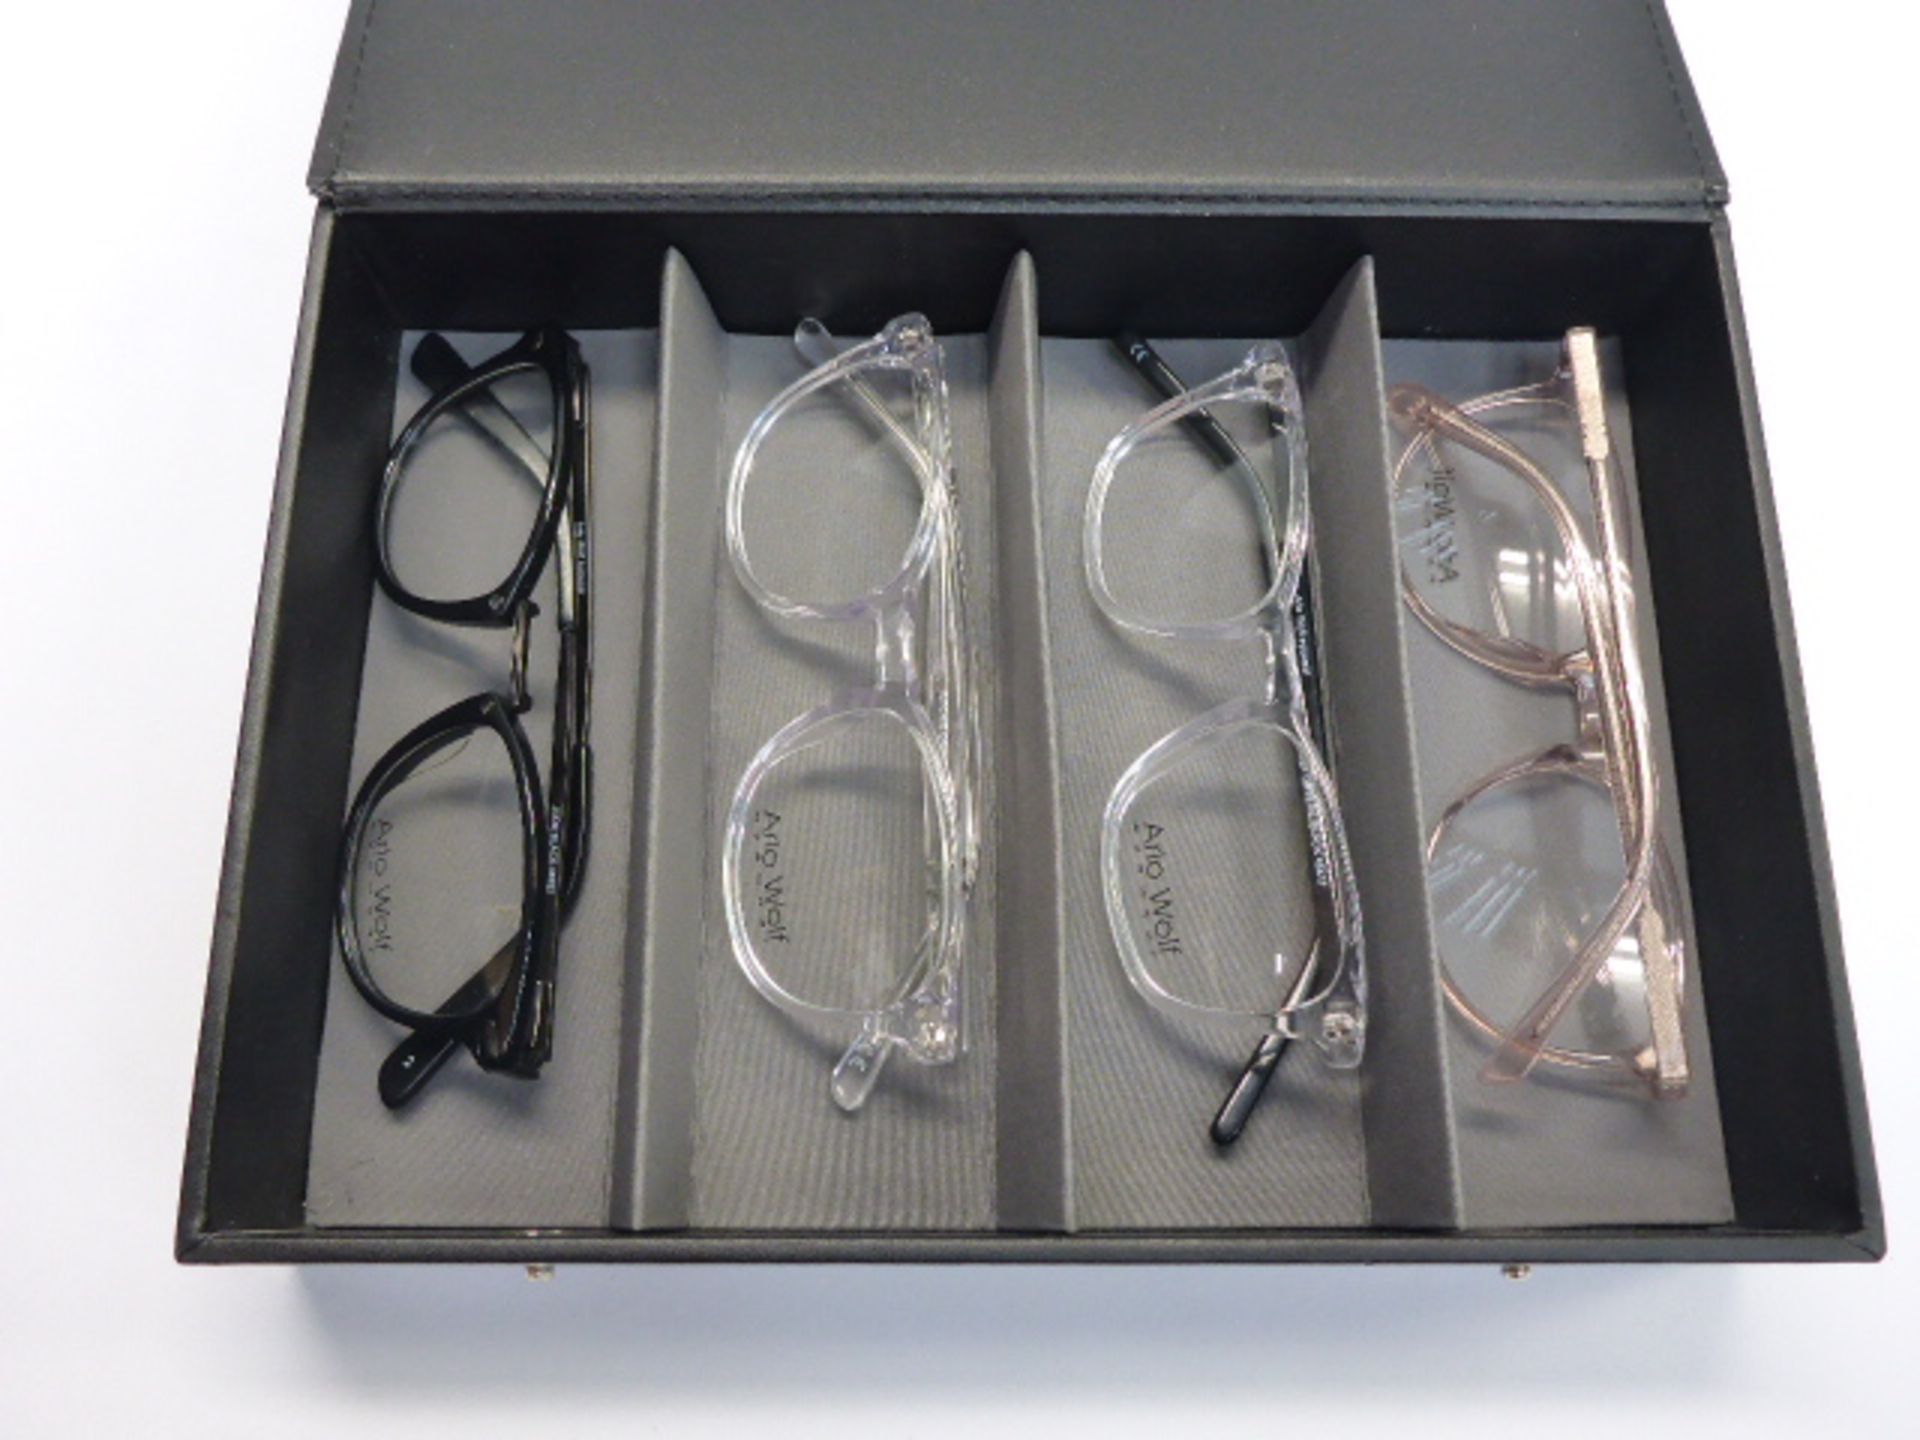 Arlo Wolf eye wear set of 4 reading glass frames in case.